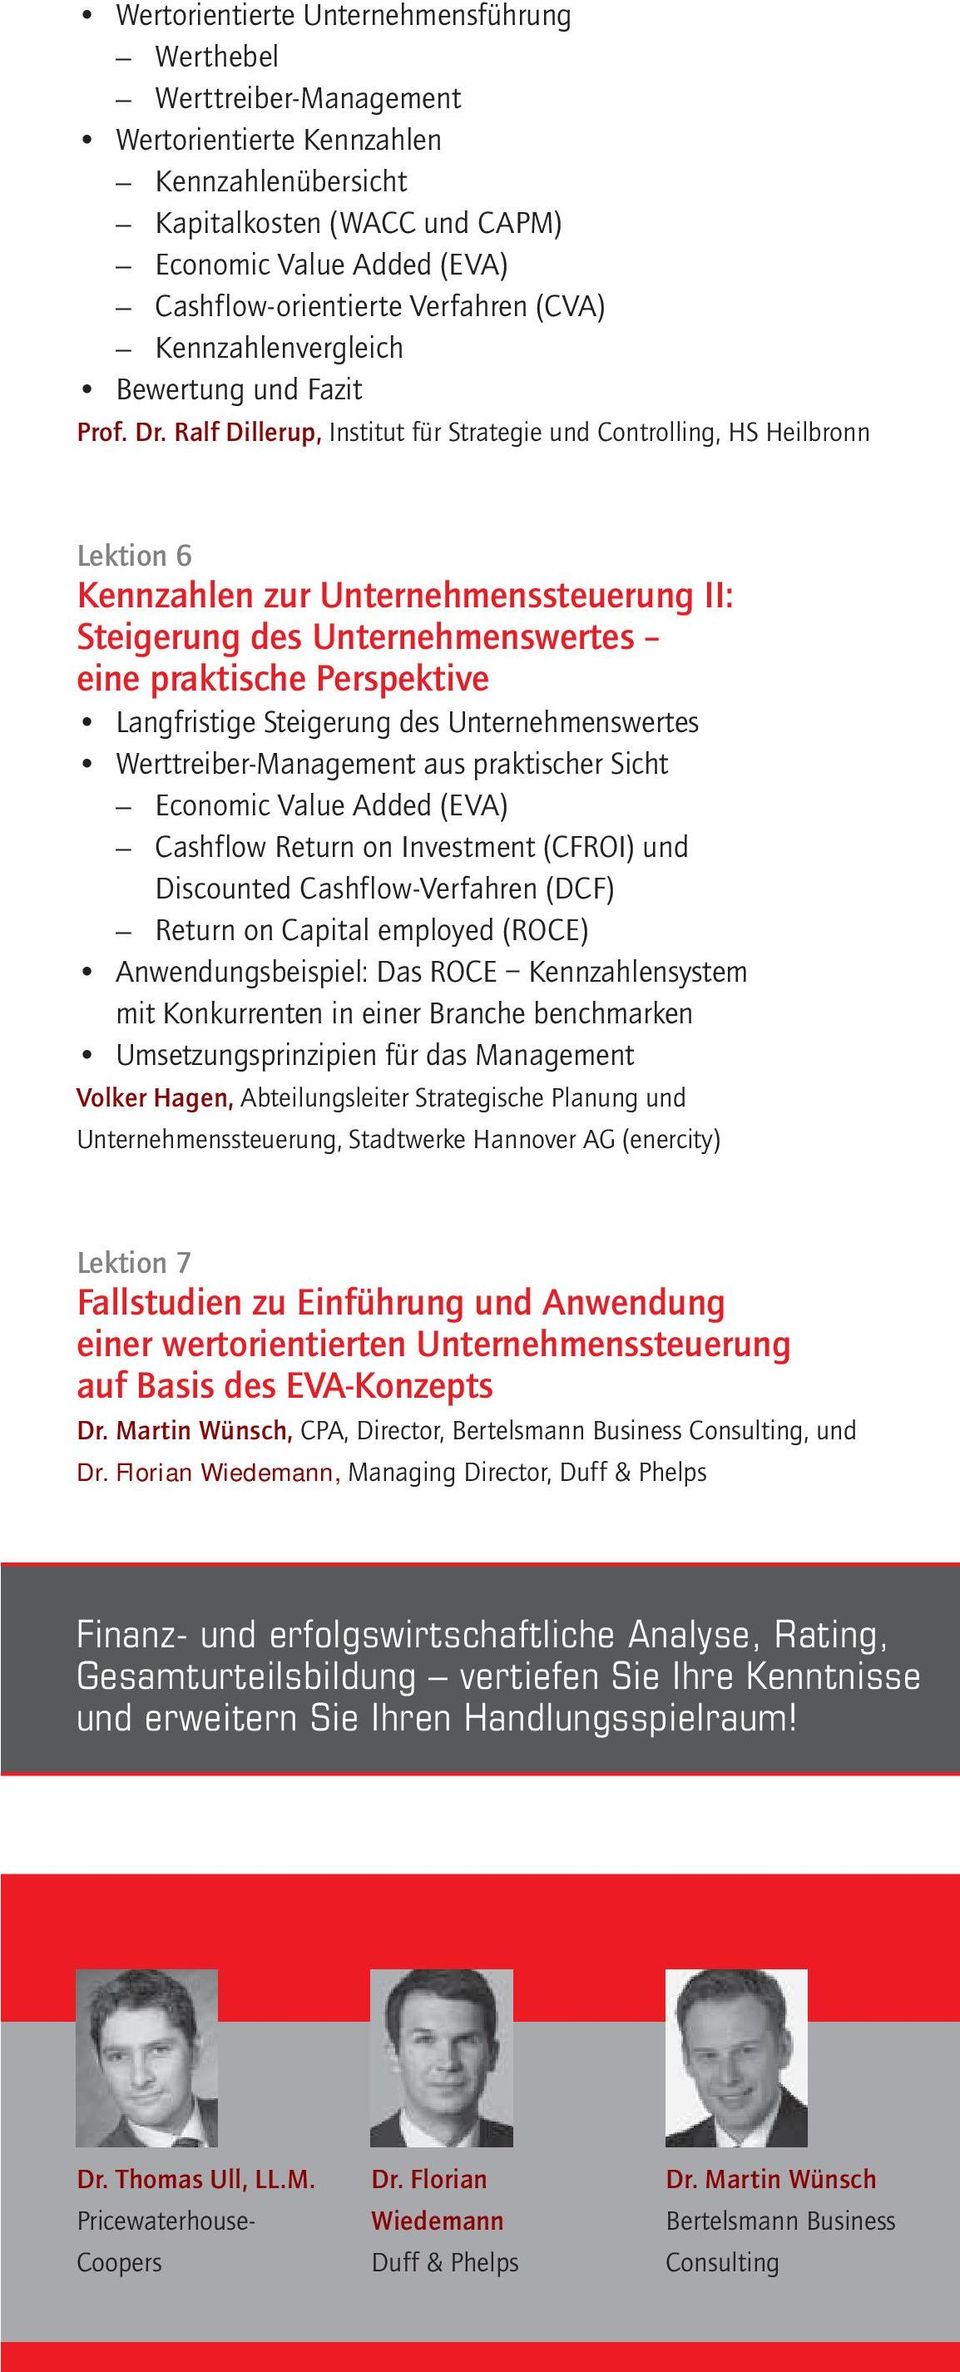 Ralf Dillerup, Institut für Strategie und Controlling, HS Heilbronn Lektion 6 Kennzahlen zur Unternehmenssteuerung II: Steigerung des Unternehmenswertes eine praktische Perspektive Langfristige